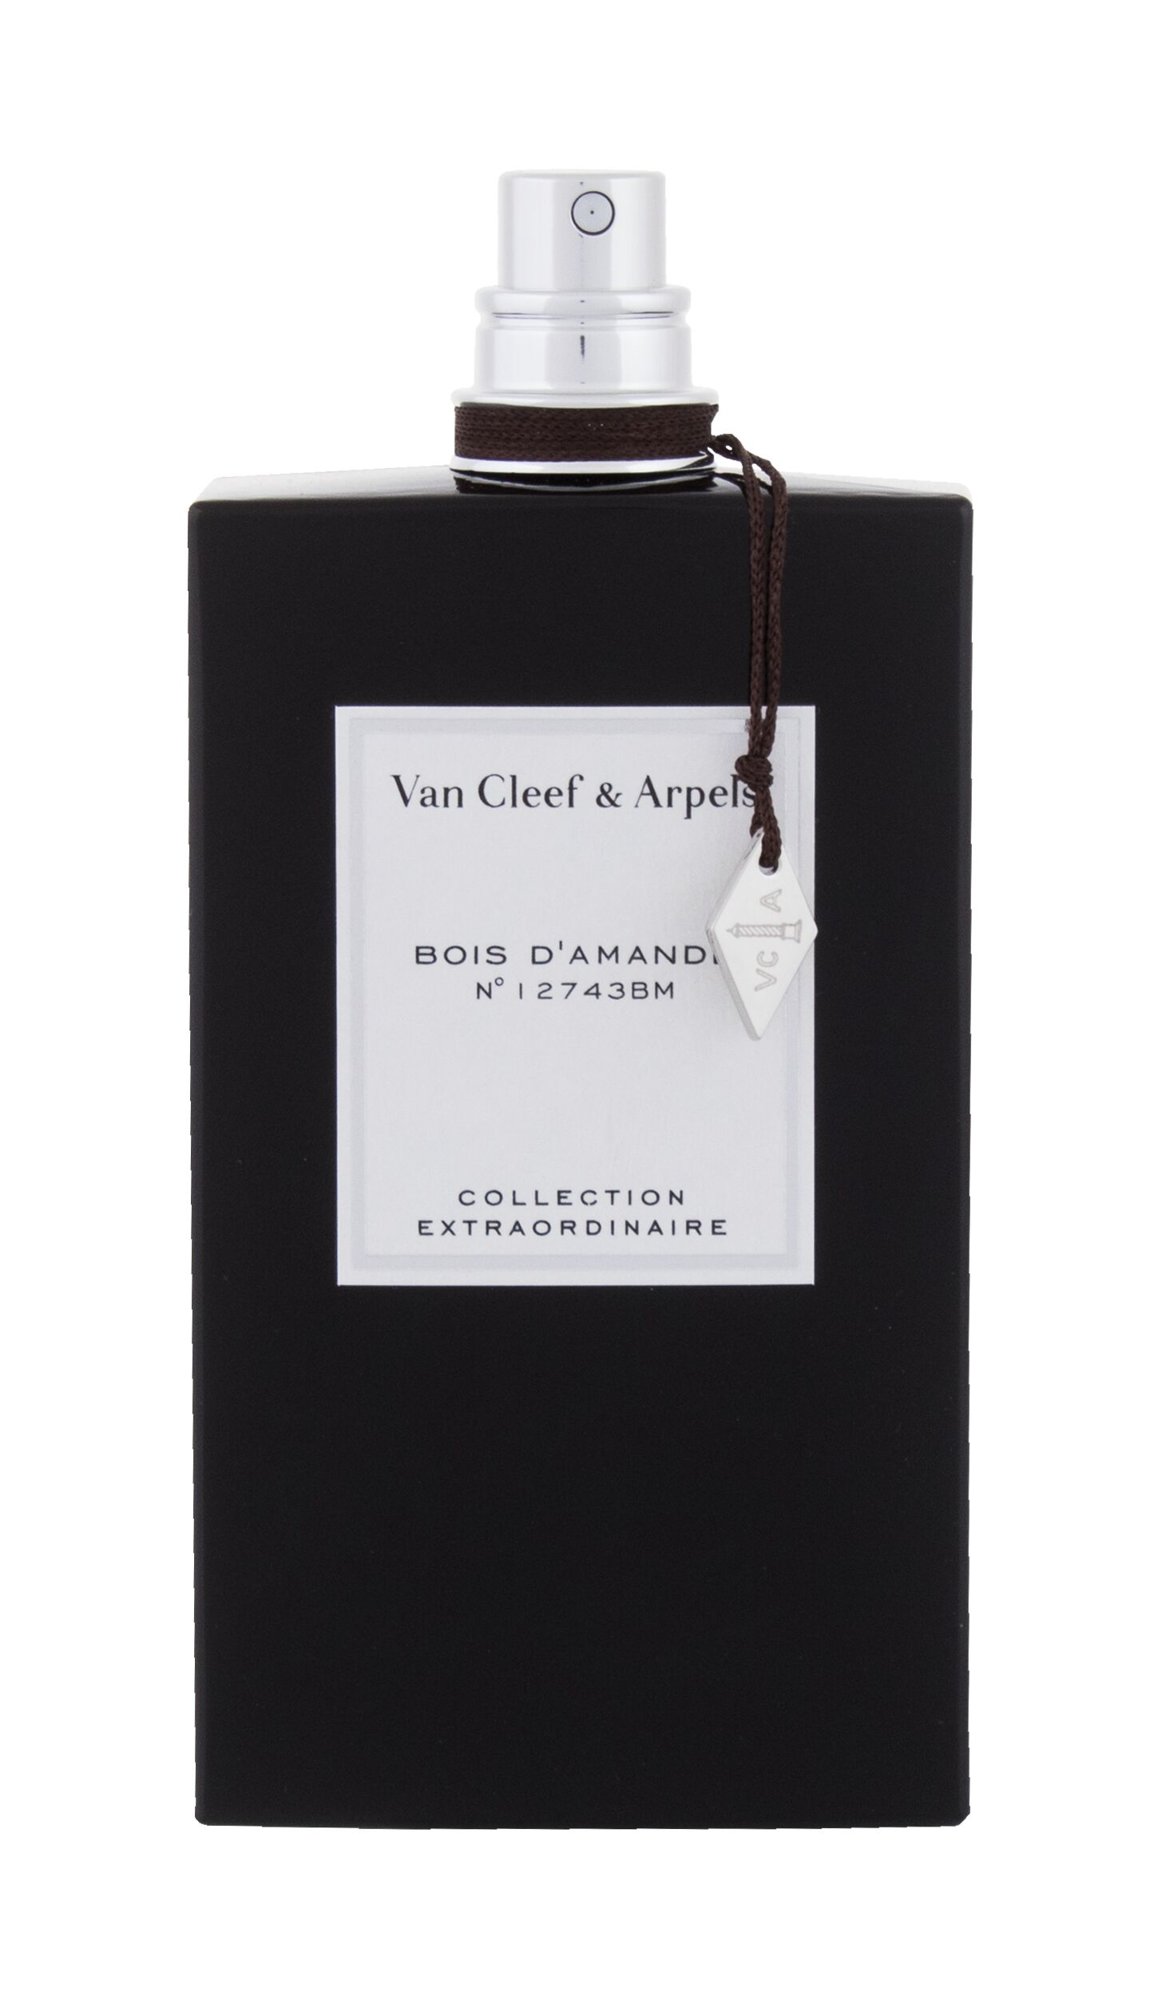 Van Cleef & Arpels Collection Extraordinaire Bois d´Amande 15 ml NIŠINIAI kvepalų mėginukas (atomaizeris) Unisex EDP